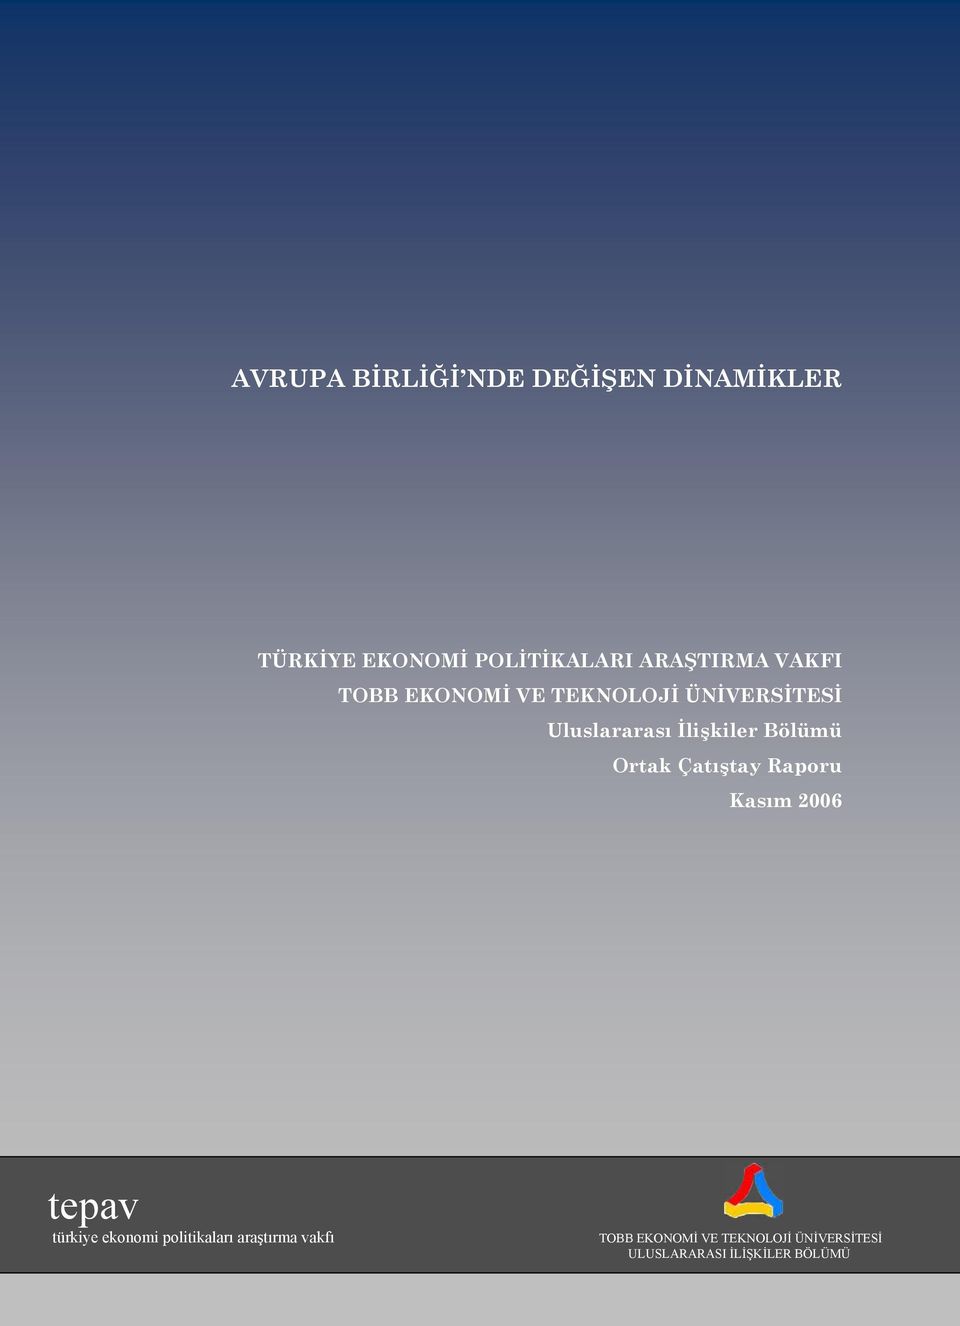 İlişkiler Bölümü Ortak Çatıştay Raporu Kasım 2006 tepav türkiye ekonomi